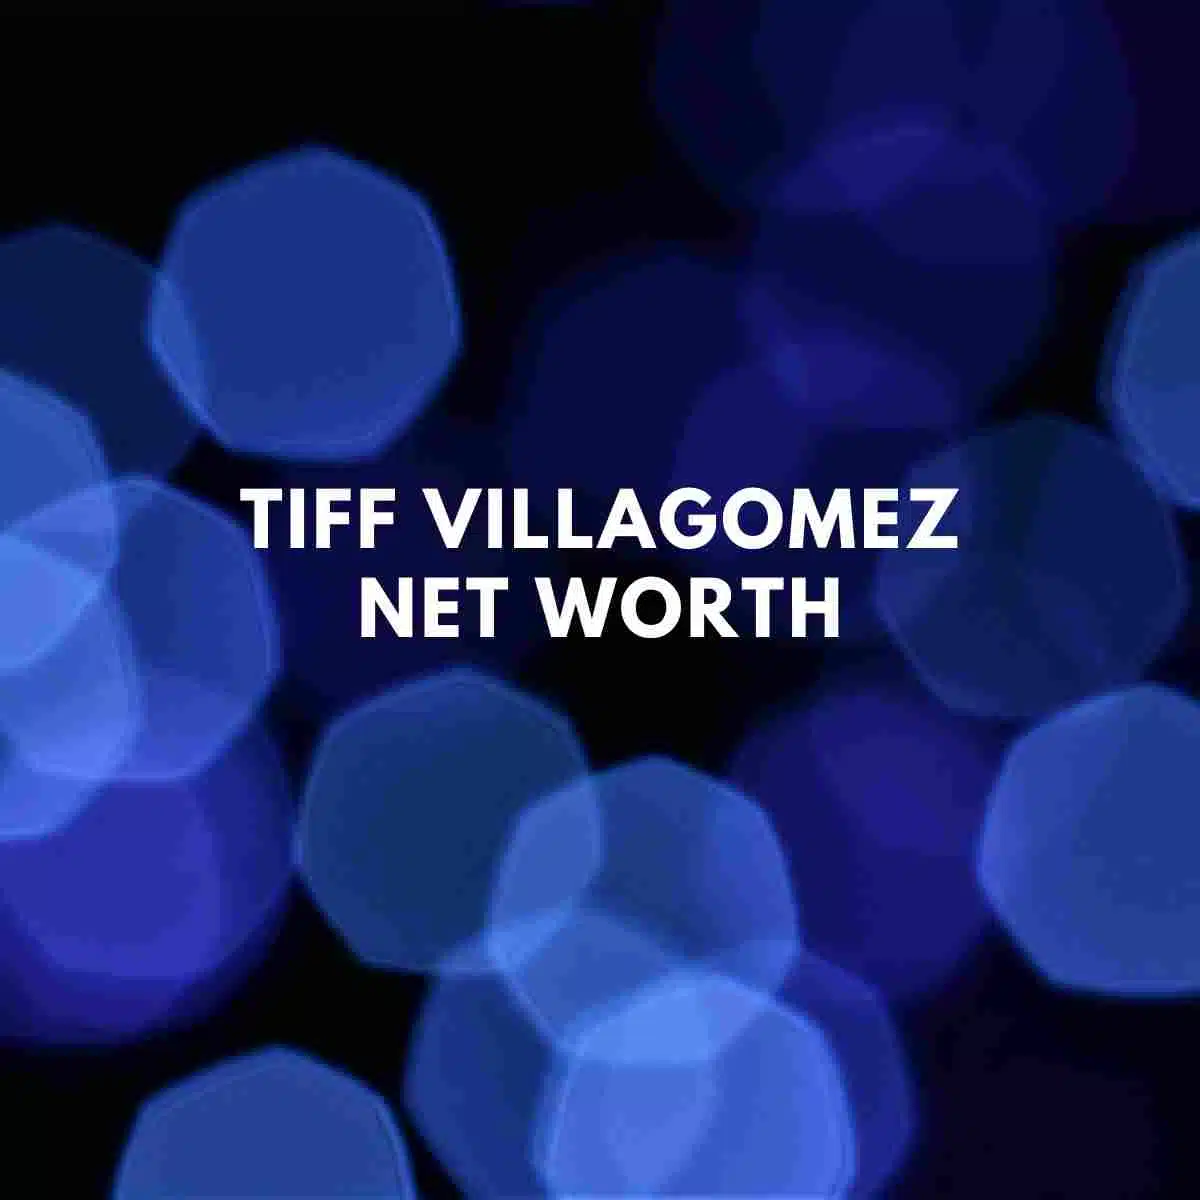 Tiff Villagomez net worth